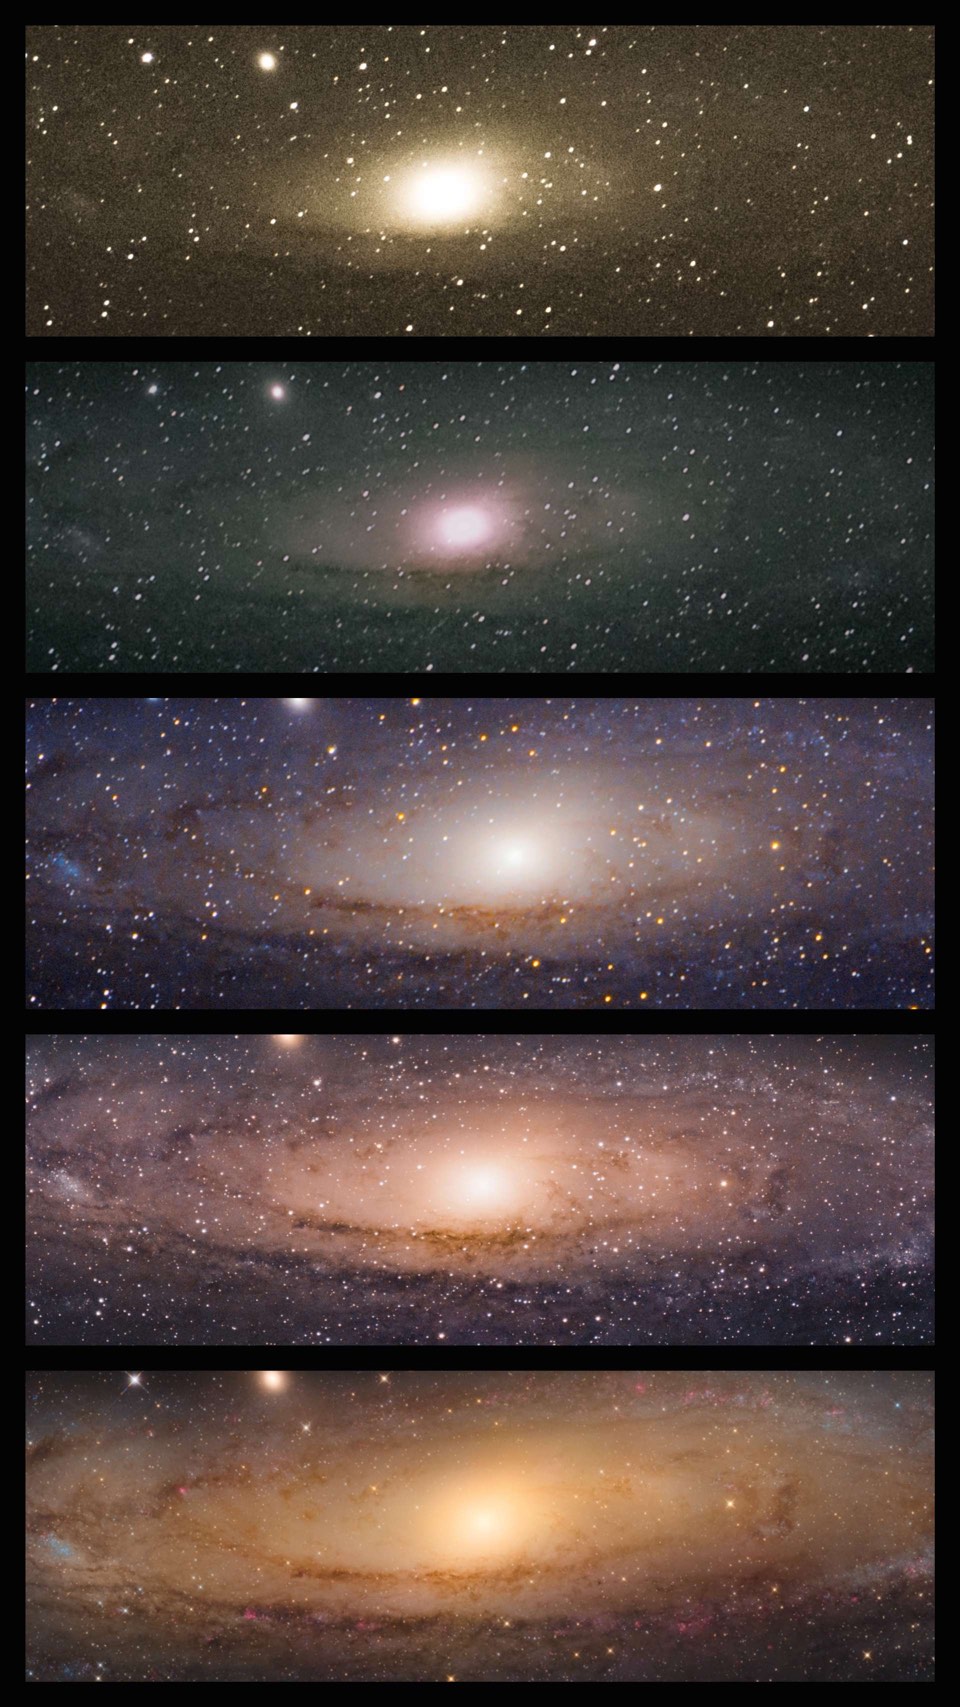 Andromedagalaxen M 31, fotograferad av Sophie Paulin. 2x utan guidning med 200 mm teleobjektiv, 1x med fotomontering och 200 mm teleobjektiv med telekonverter, 1x med fotomontering och 600 mm teleobjektiv, 1x med 8-tum f/4,5 Newton-teleskop.